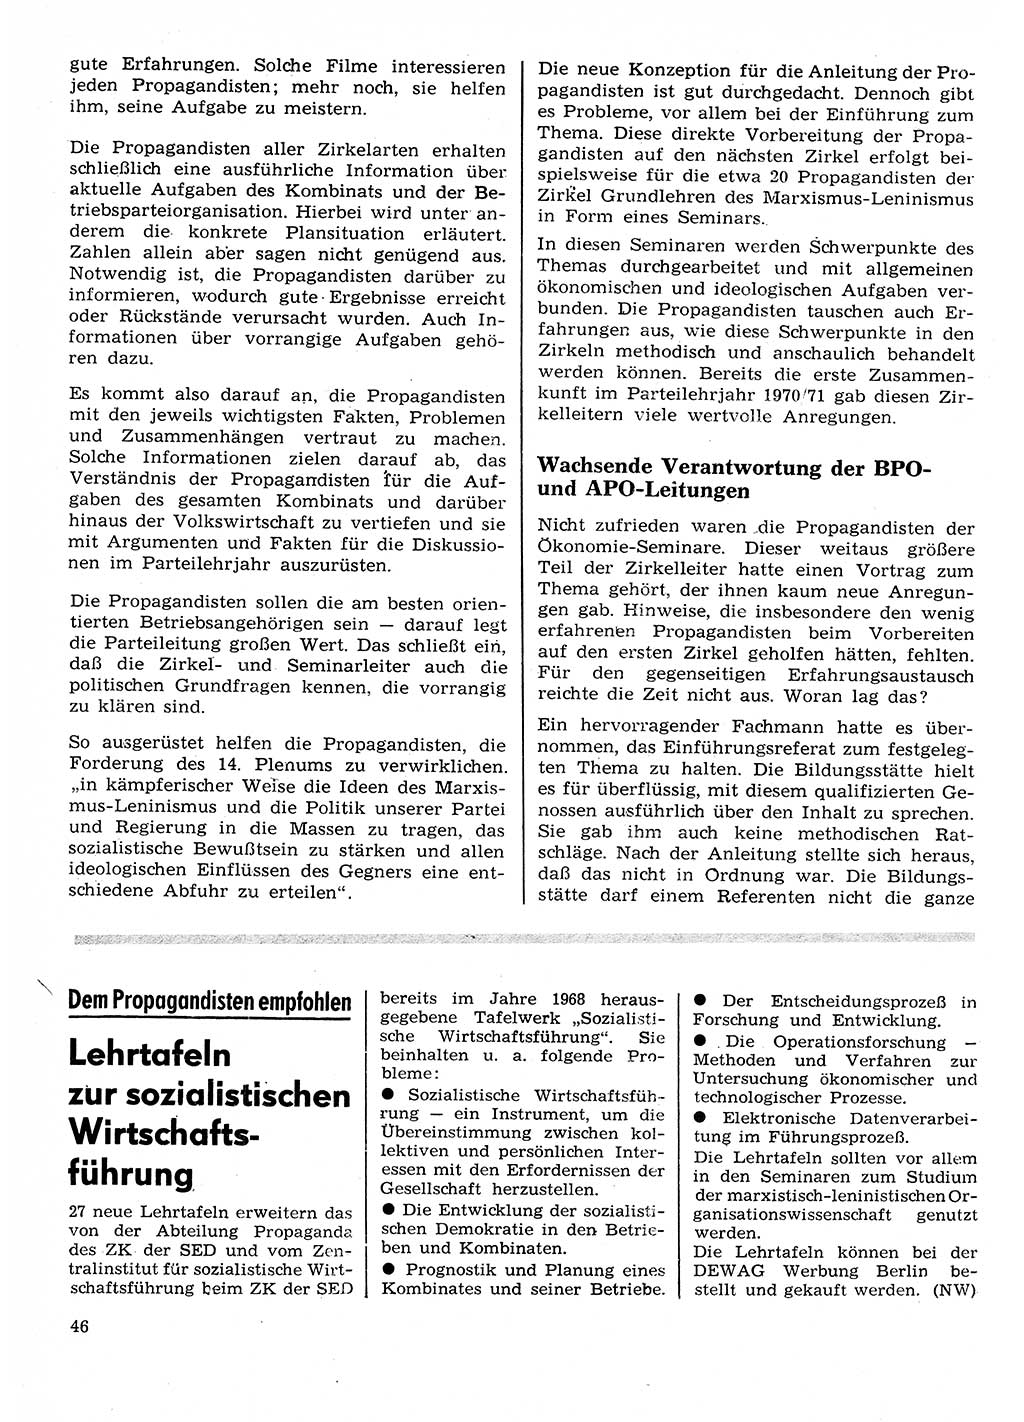 Neuer Weg (NW), Organ des Zentralkomitees (ZK) der SED (Sozialistische Einheitspartei Deutschlands) für Fragen des Parteilebens, 26. Jahrgang [Deutsche Demokratische Republik (DDR)] 1971, Seite 46 (NW ZK SED DDR 1971, S. 46)